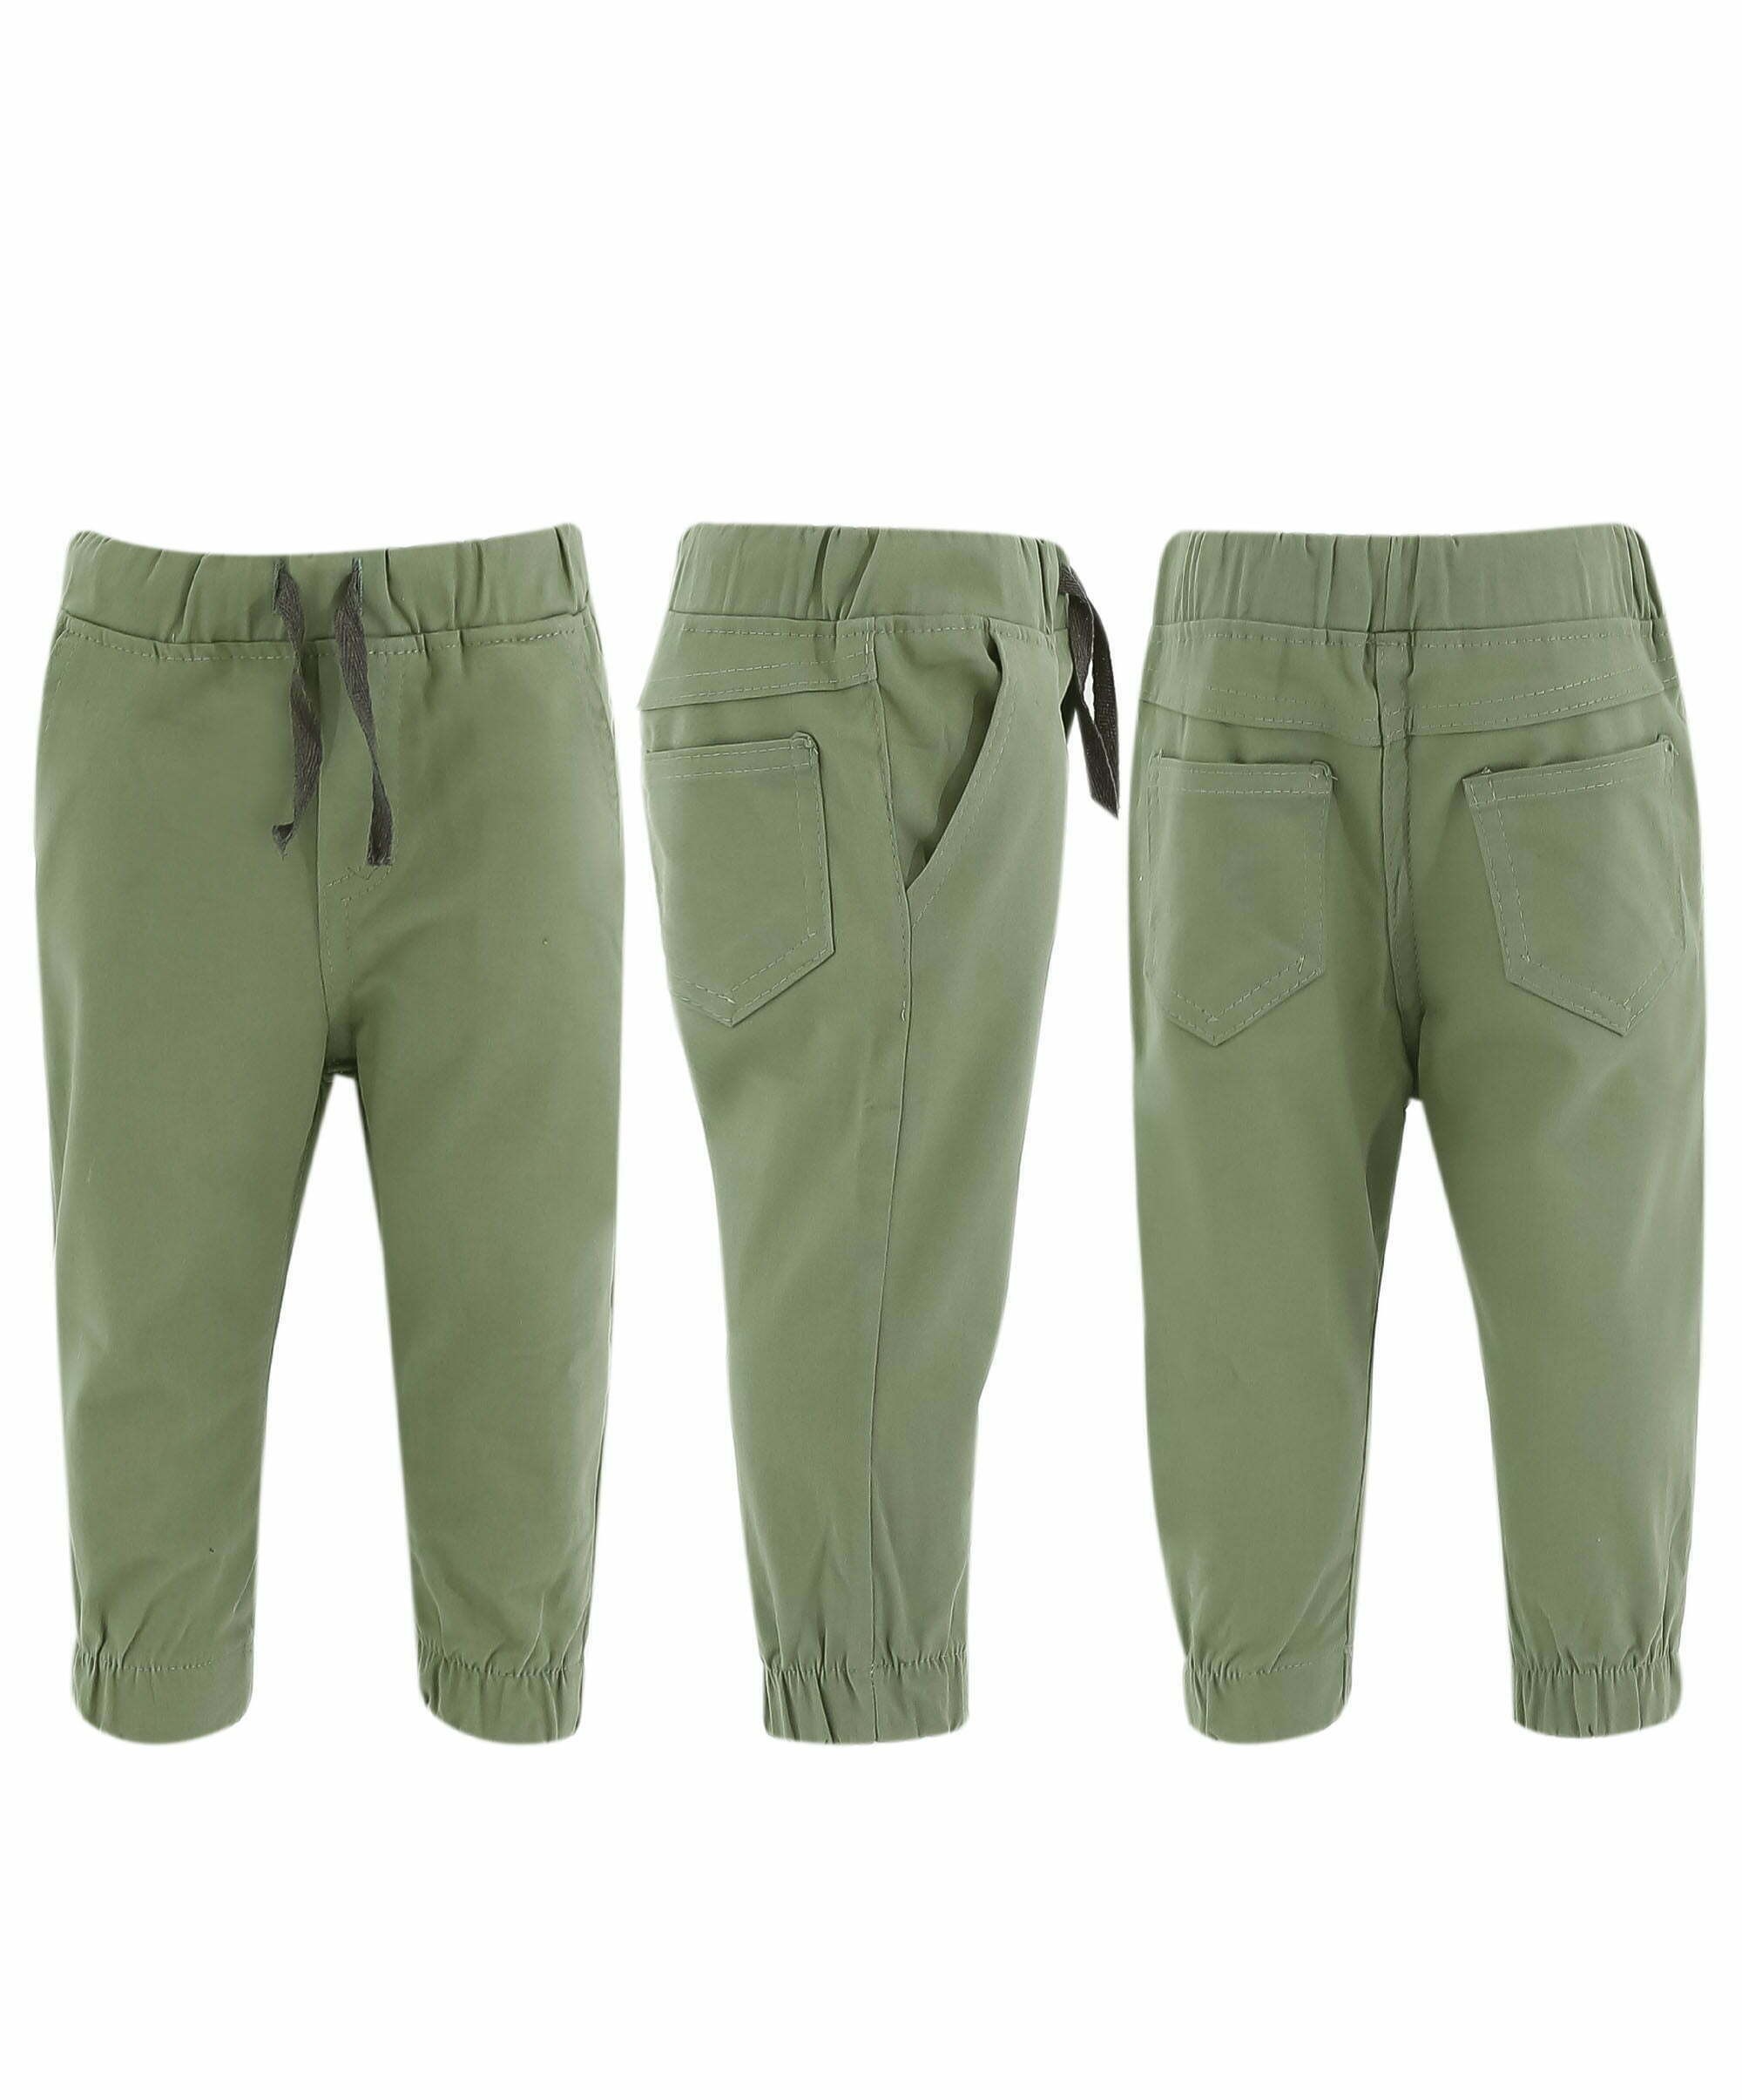 Erkek Çocuk 0-6 Yaş Chino Pantolon - Yeşil